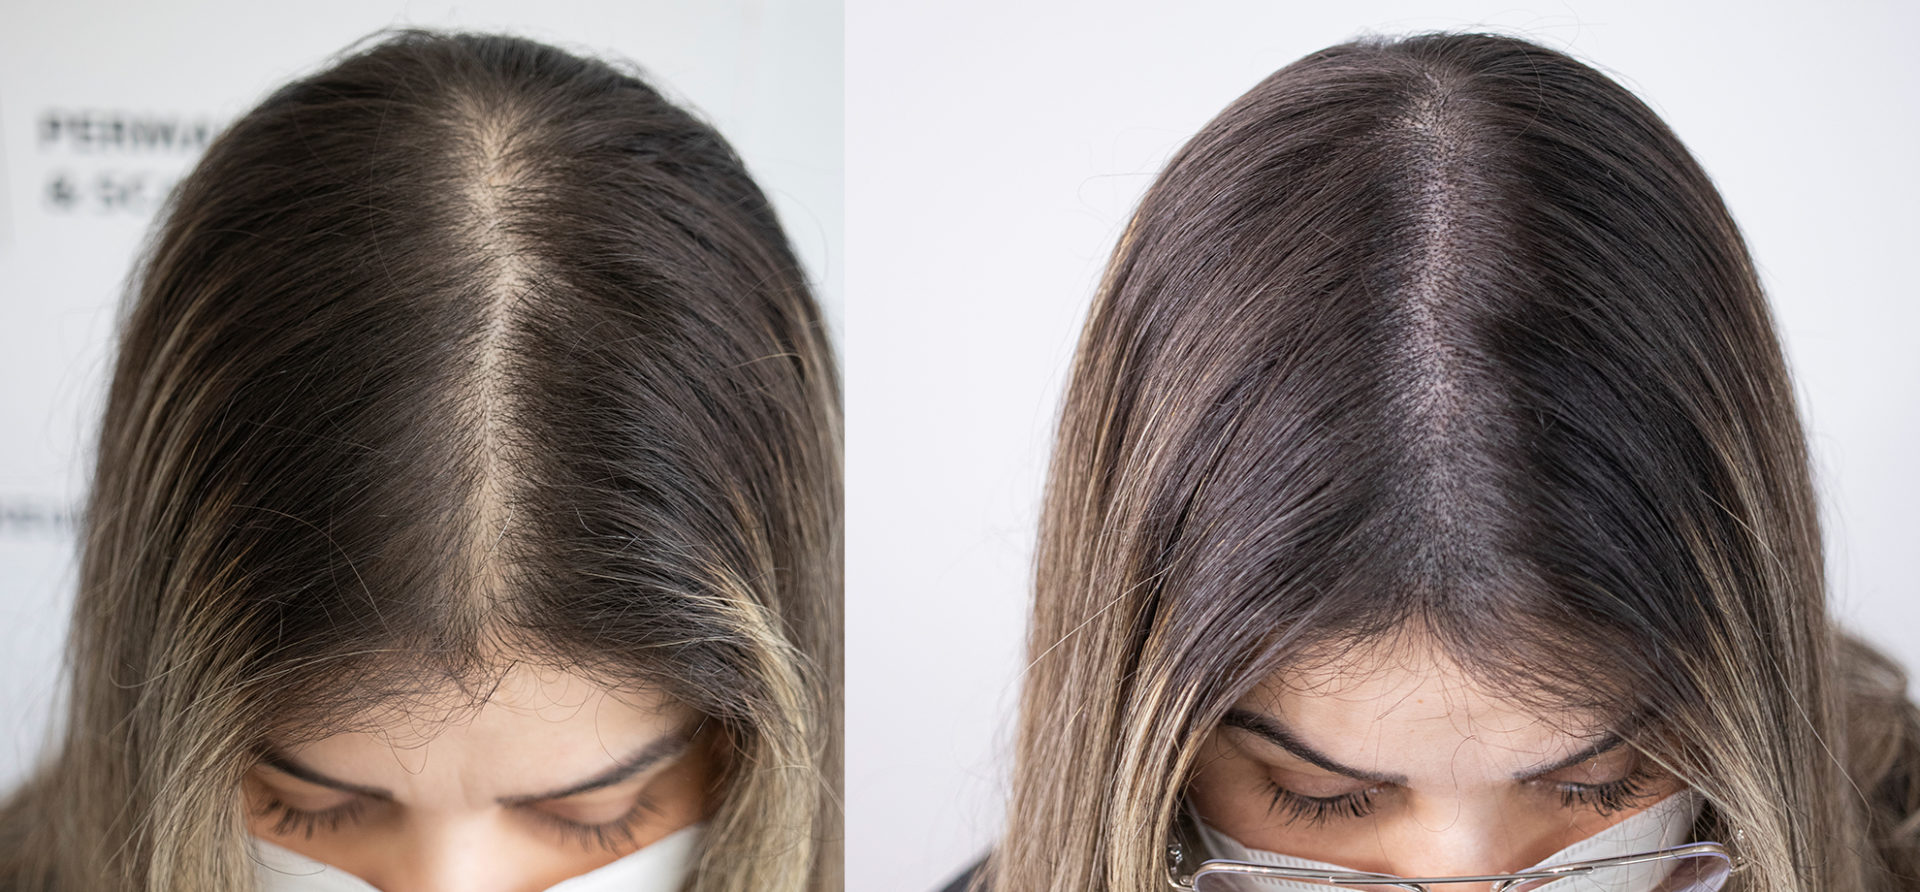 female-scalp-micropigmentation-unyozibeauty